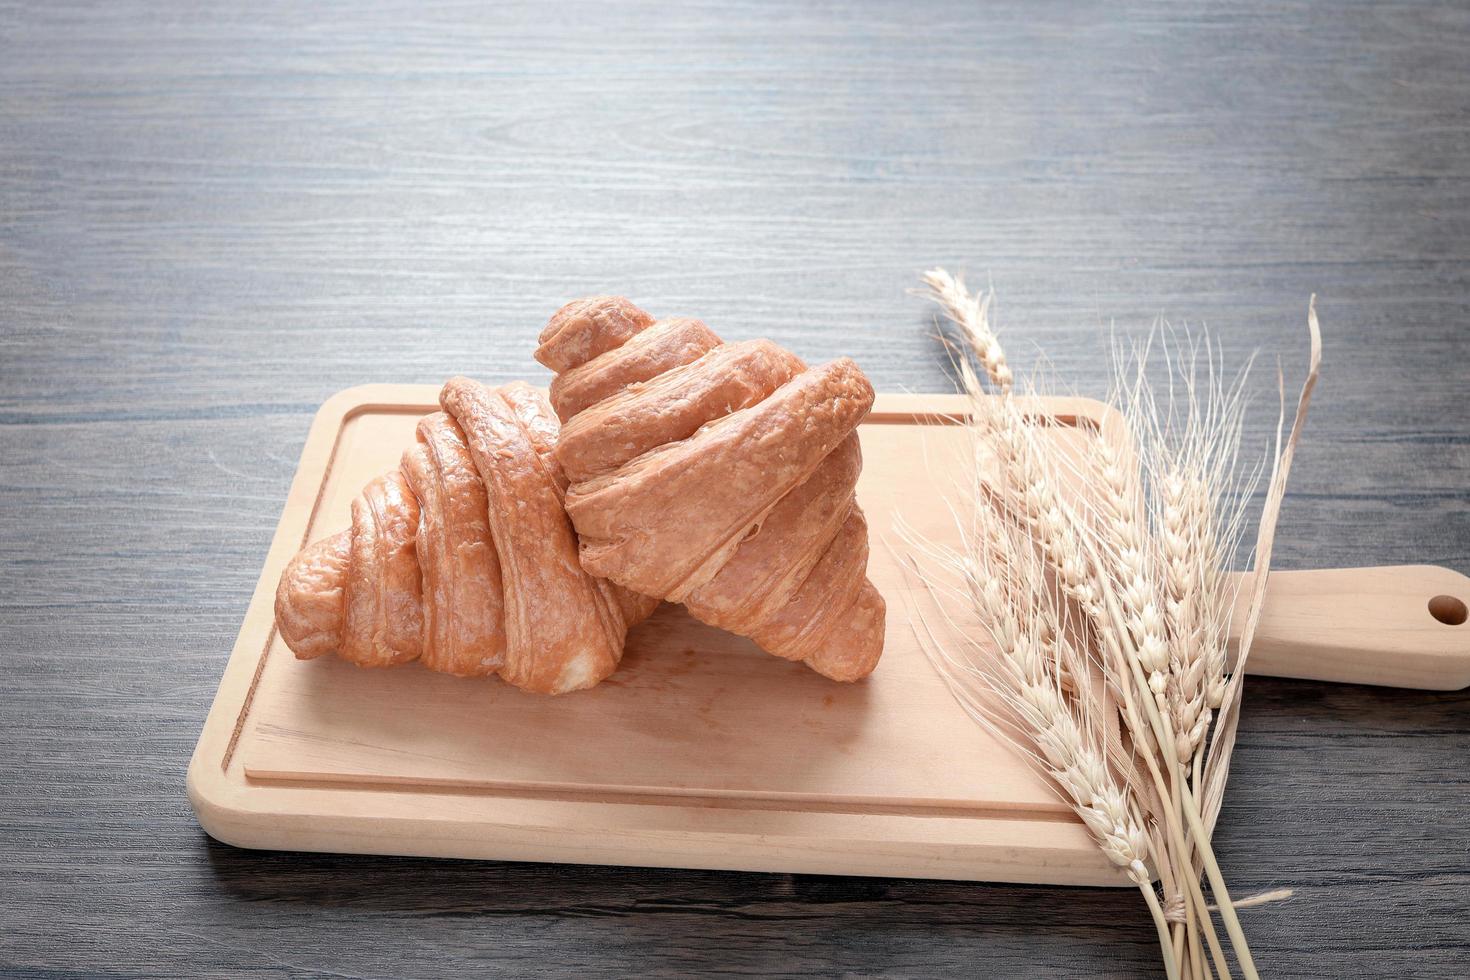 twee versgebakken heerlijke croissants met spikelets op houten snijplank, eten op ontbijttafel foto